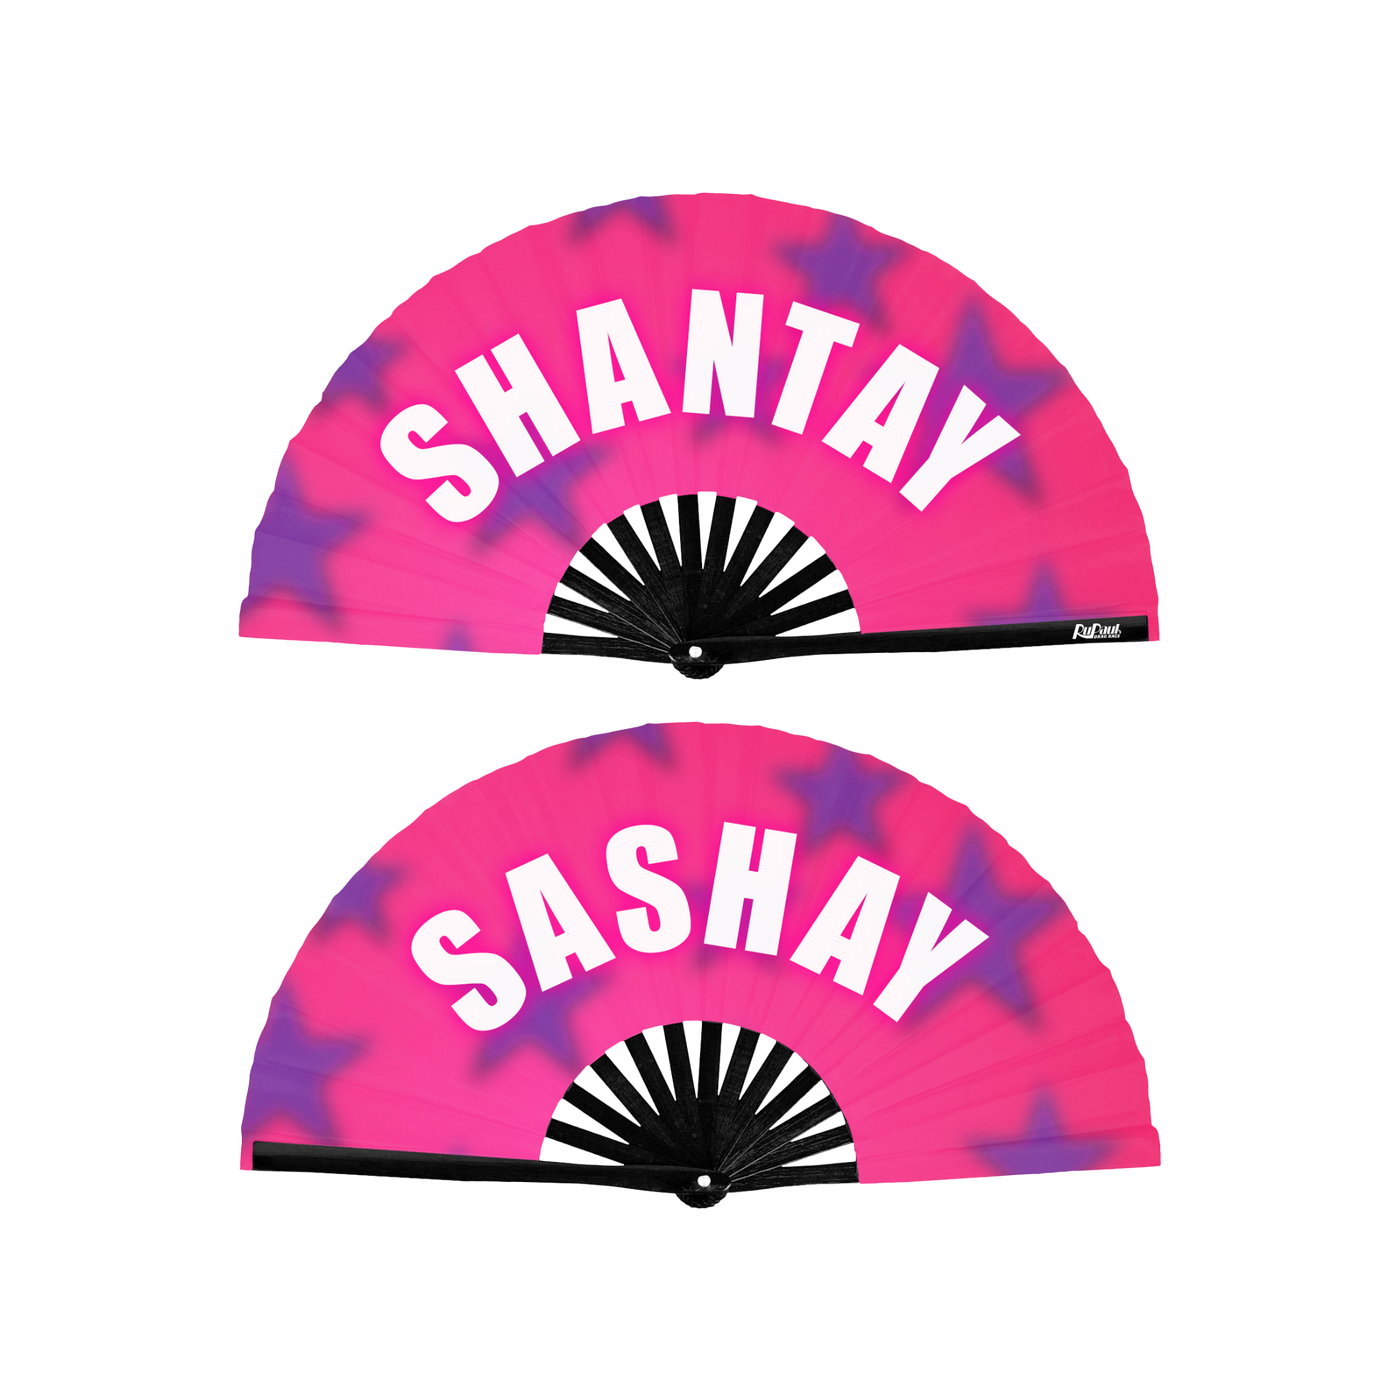 Shantay Sashay Double Sided Hand Fan